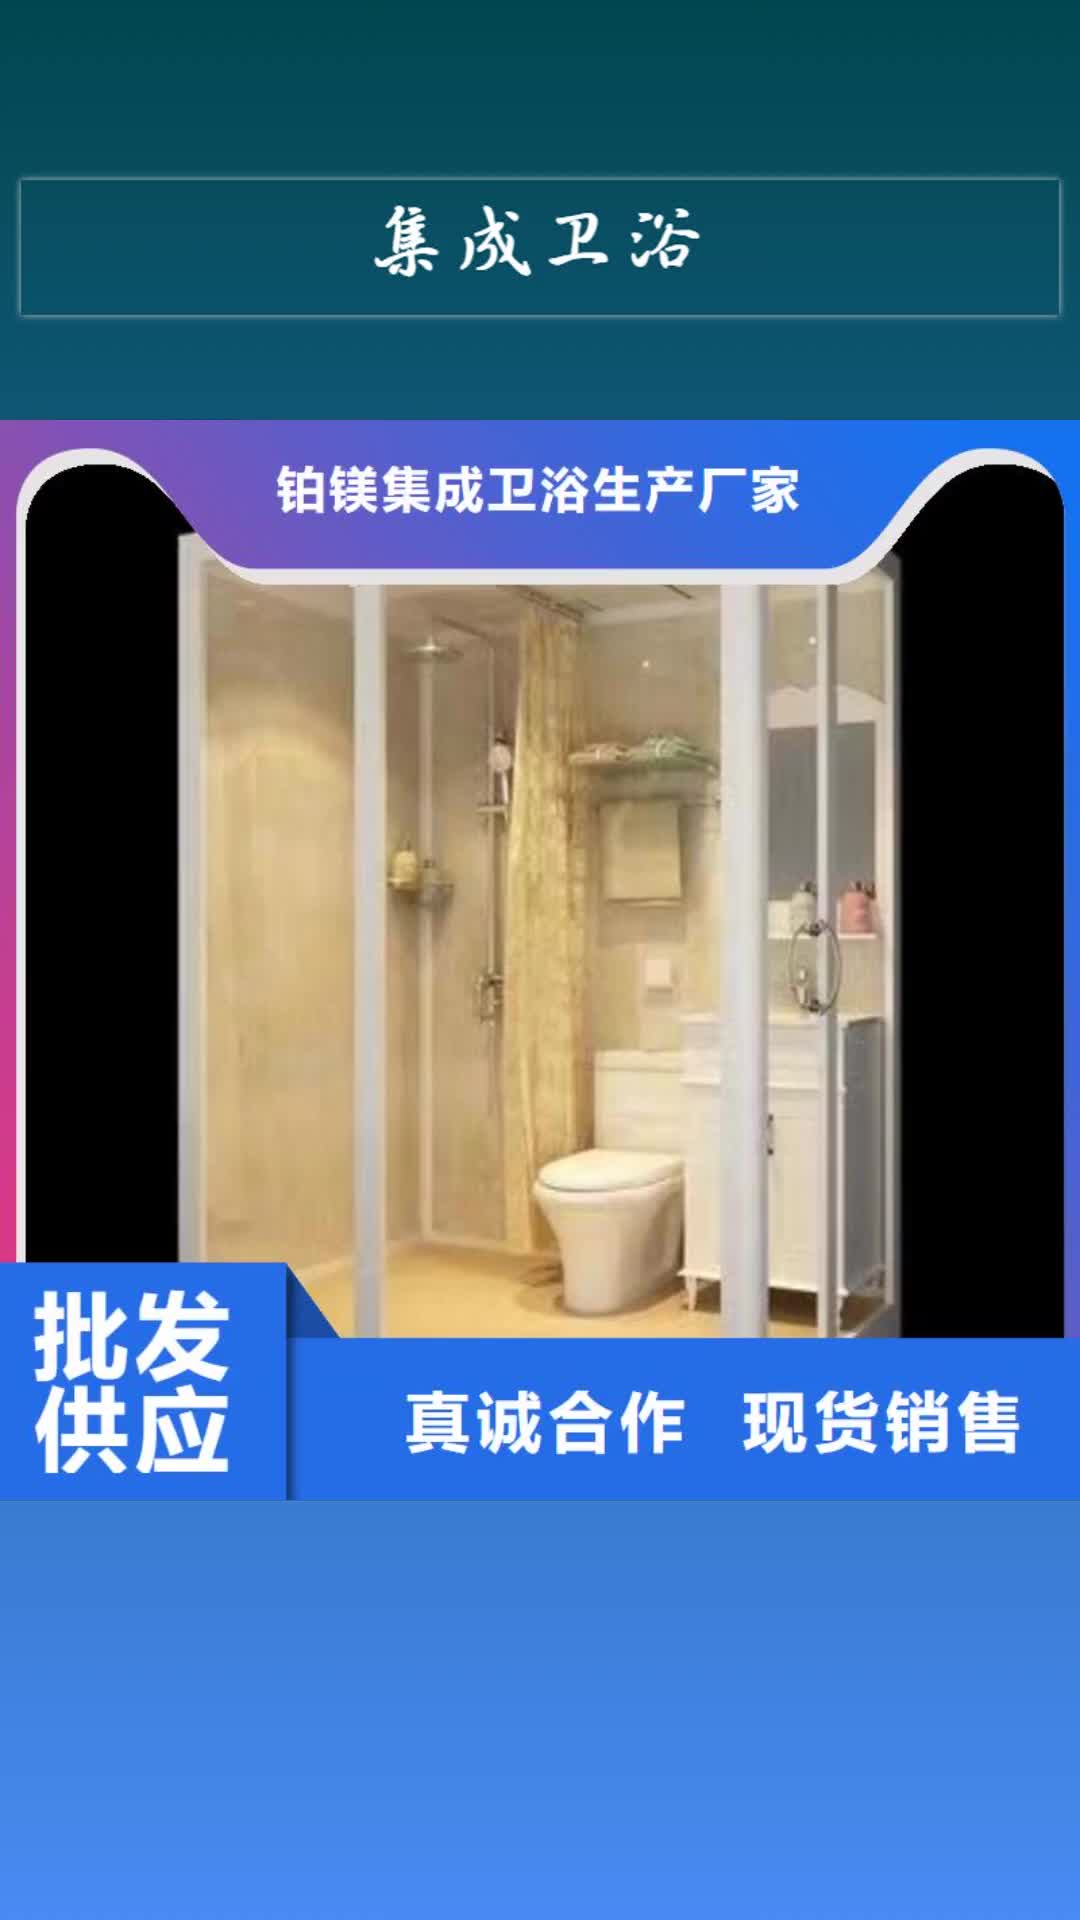 【宜昌 集成卫浴-公共厕所售后无忧】